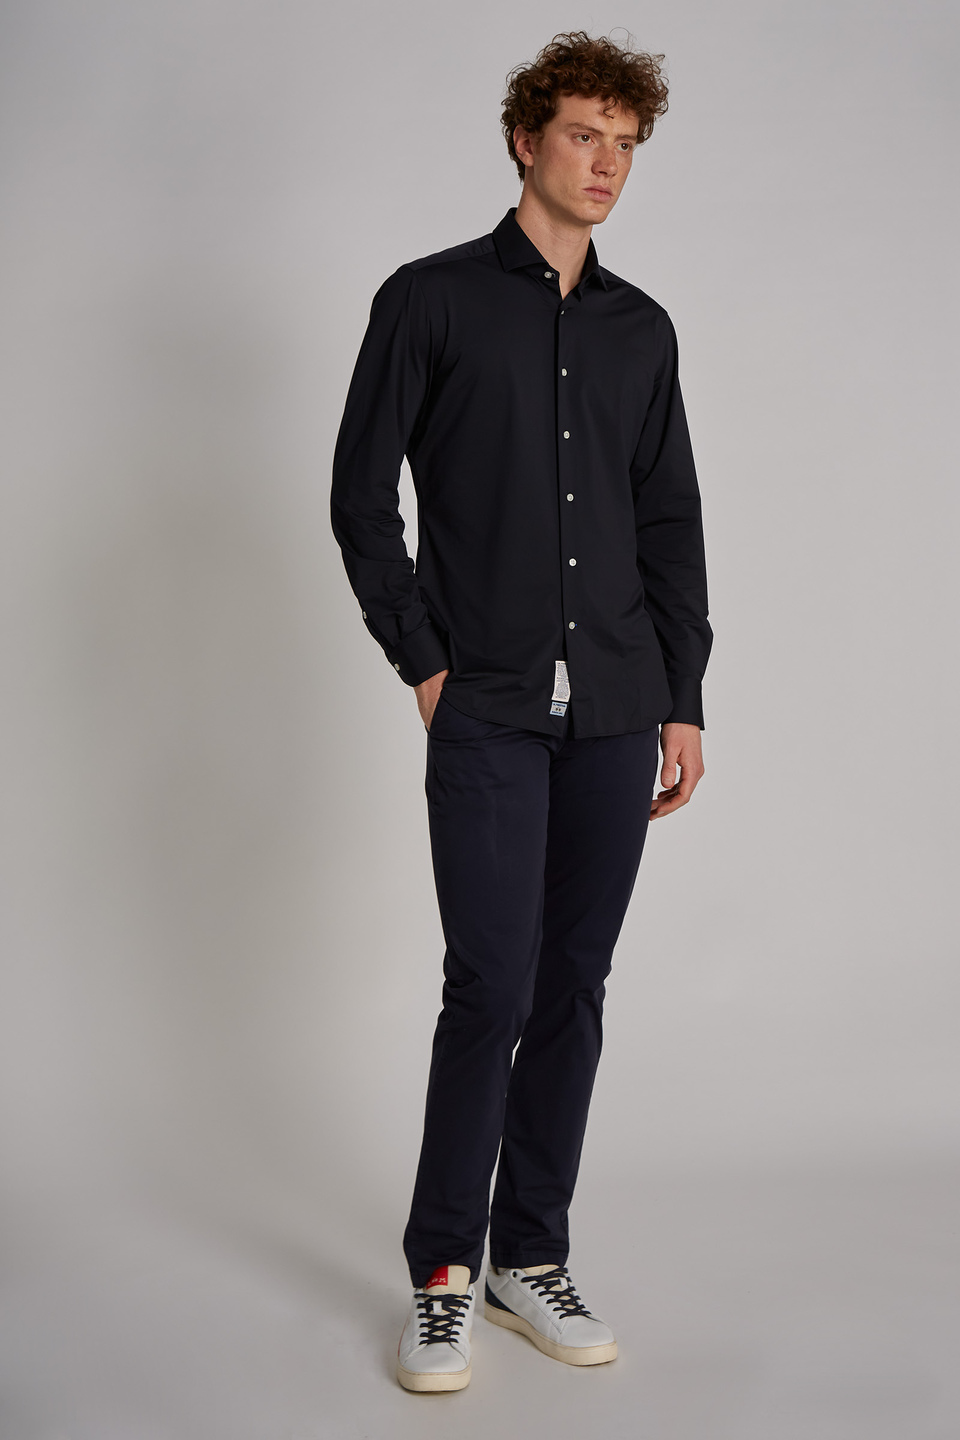 Camisa hombre algodón manga larga corte custom - La Martina - Official Online Shop